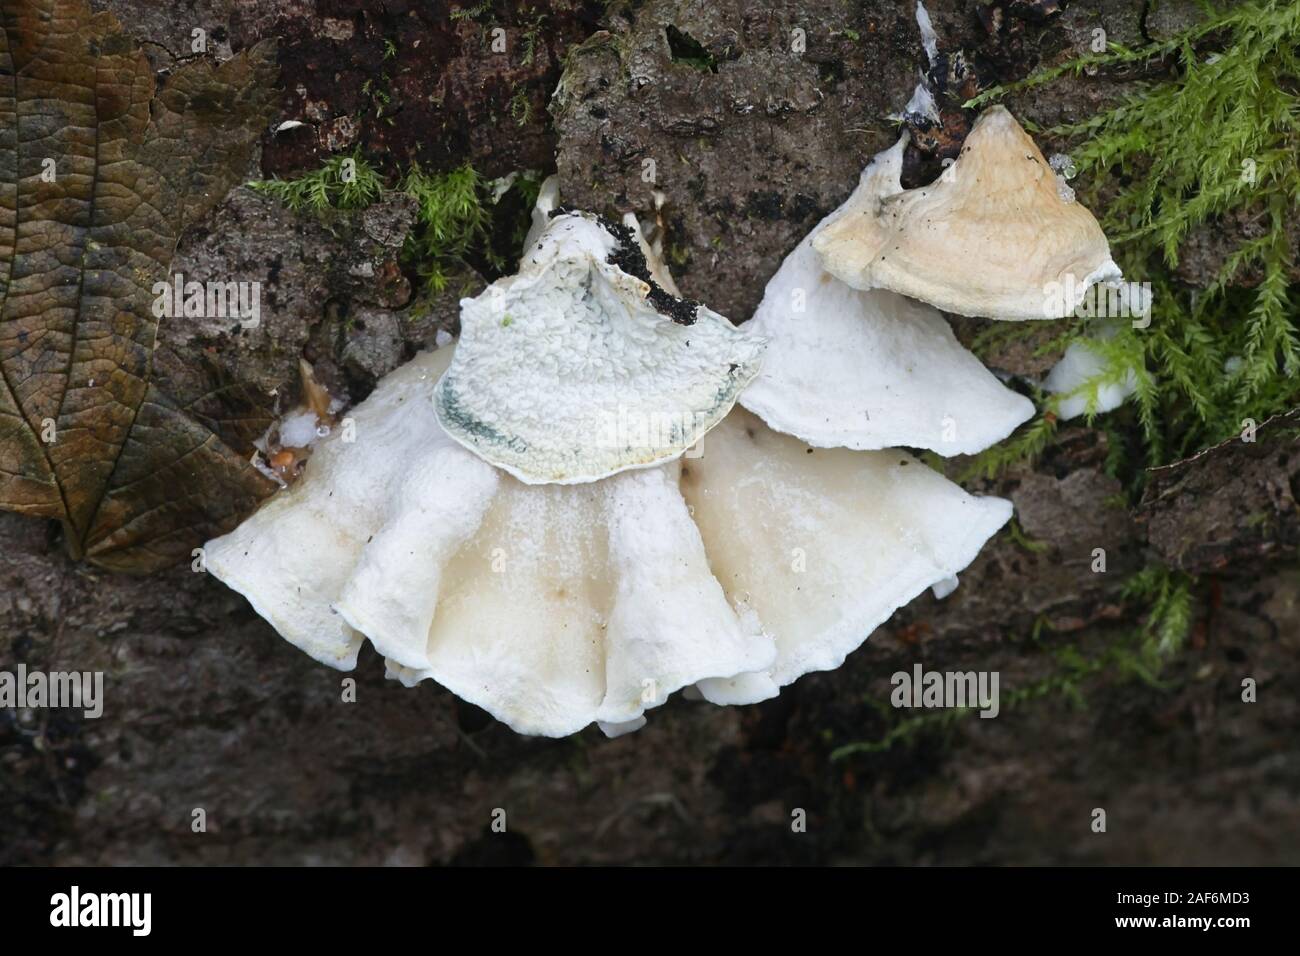 Plicature alni, wild fungus from Finland Stock Photo